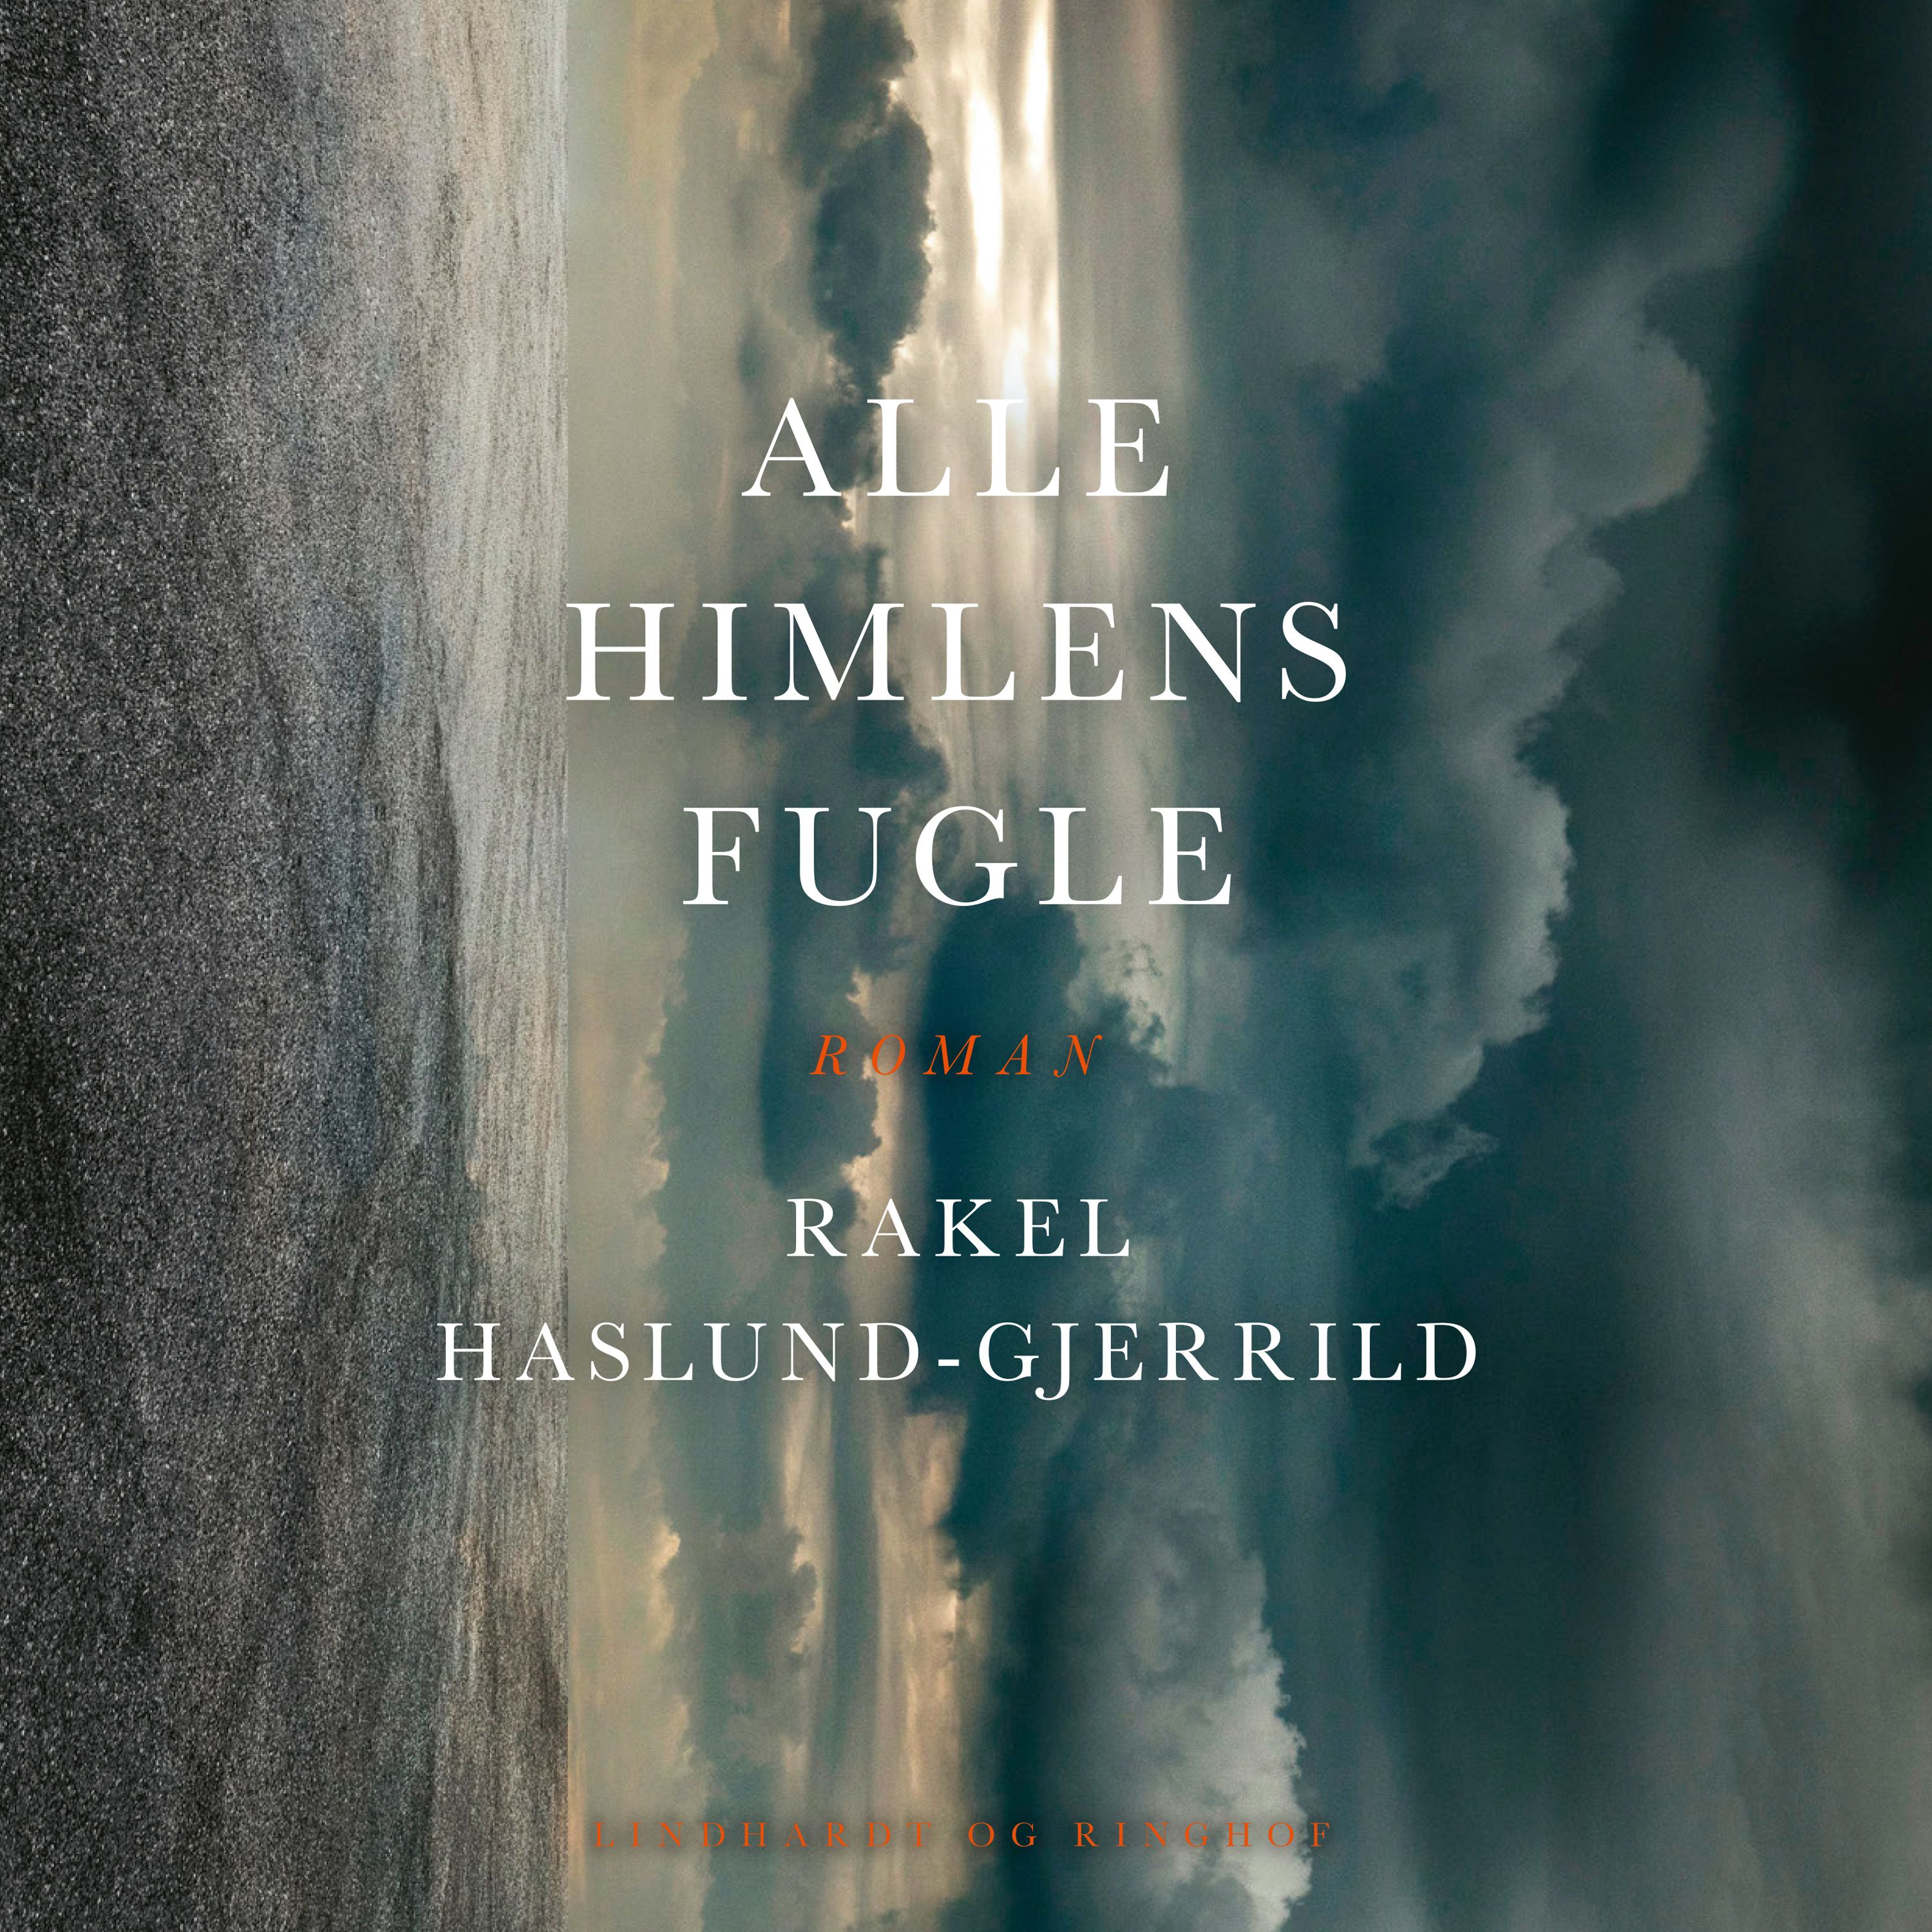 Alle himlens fugle, lydbog af Rakel Haslund-Gjerrild